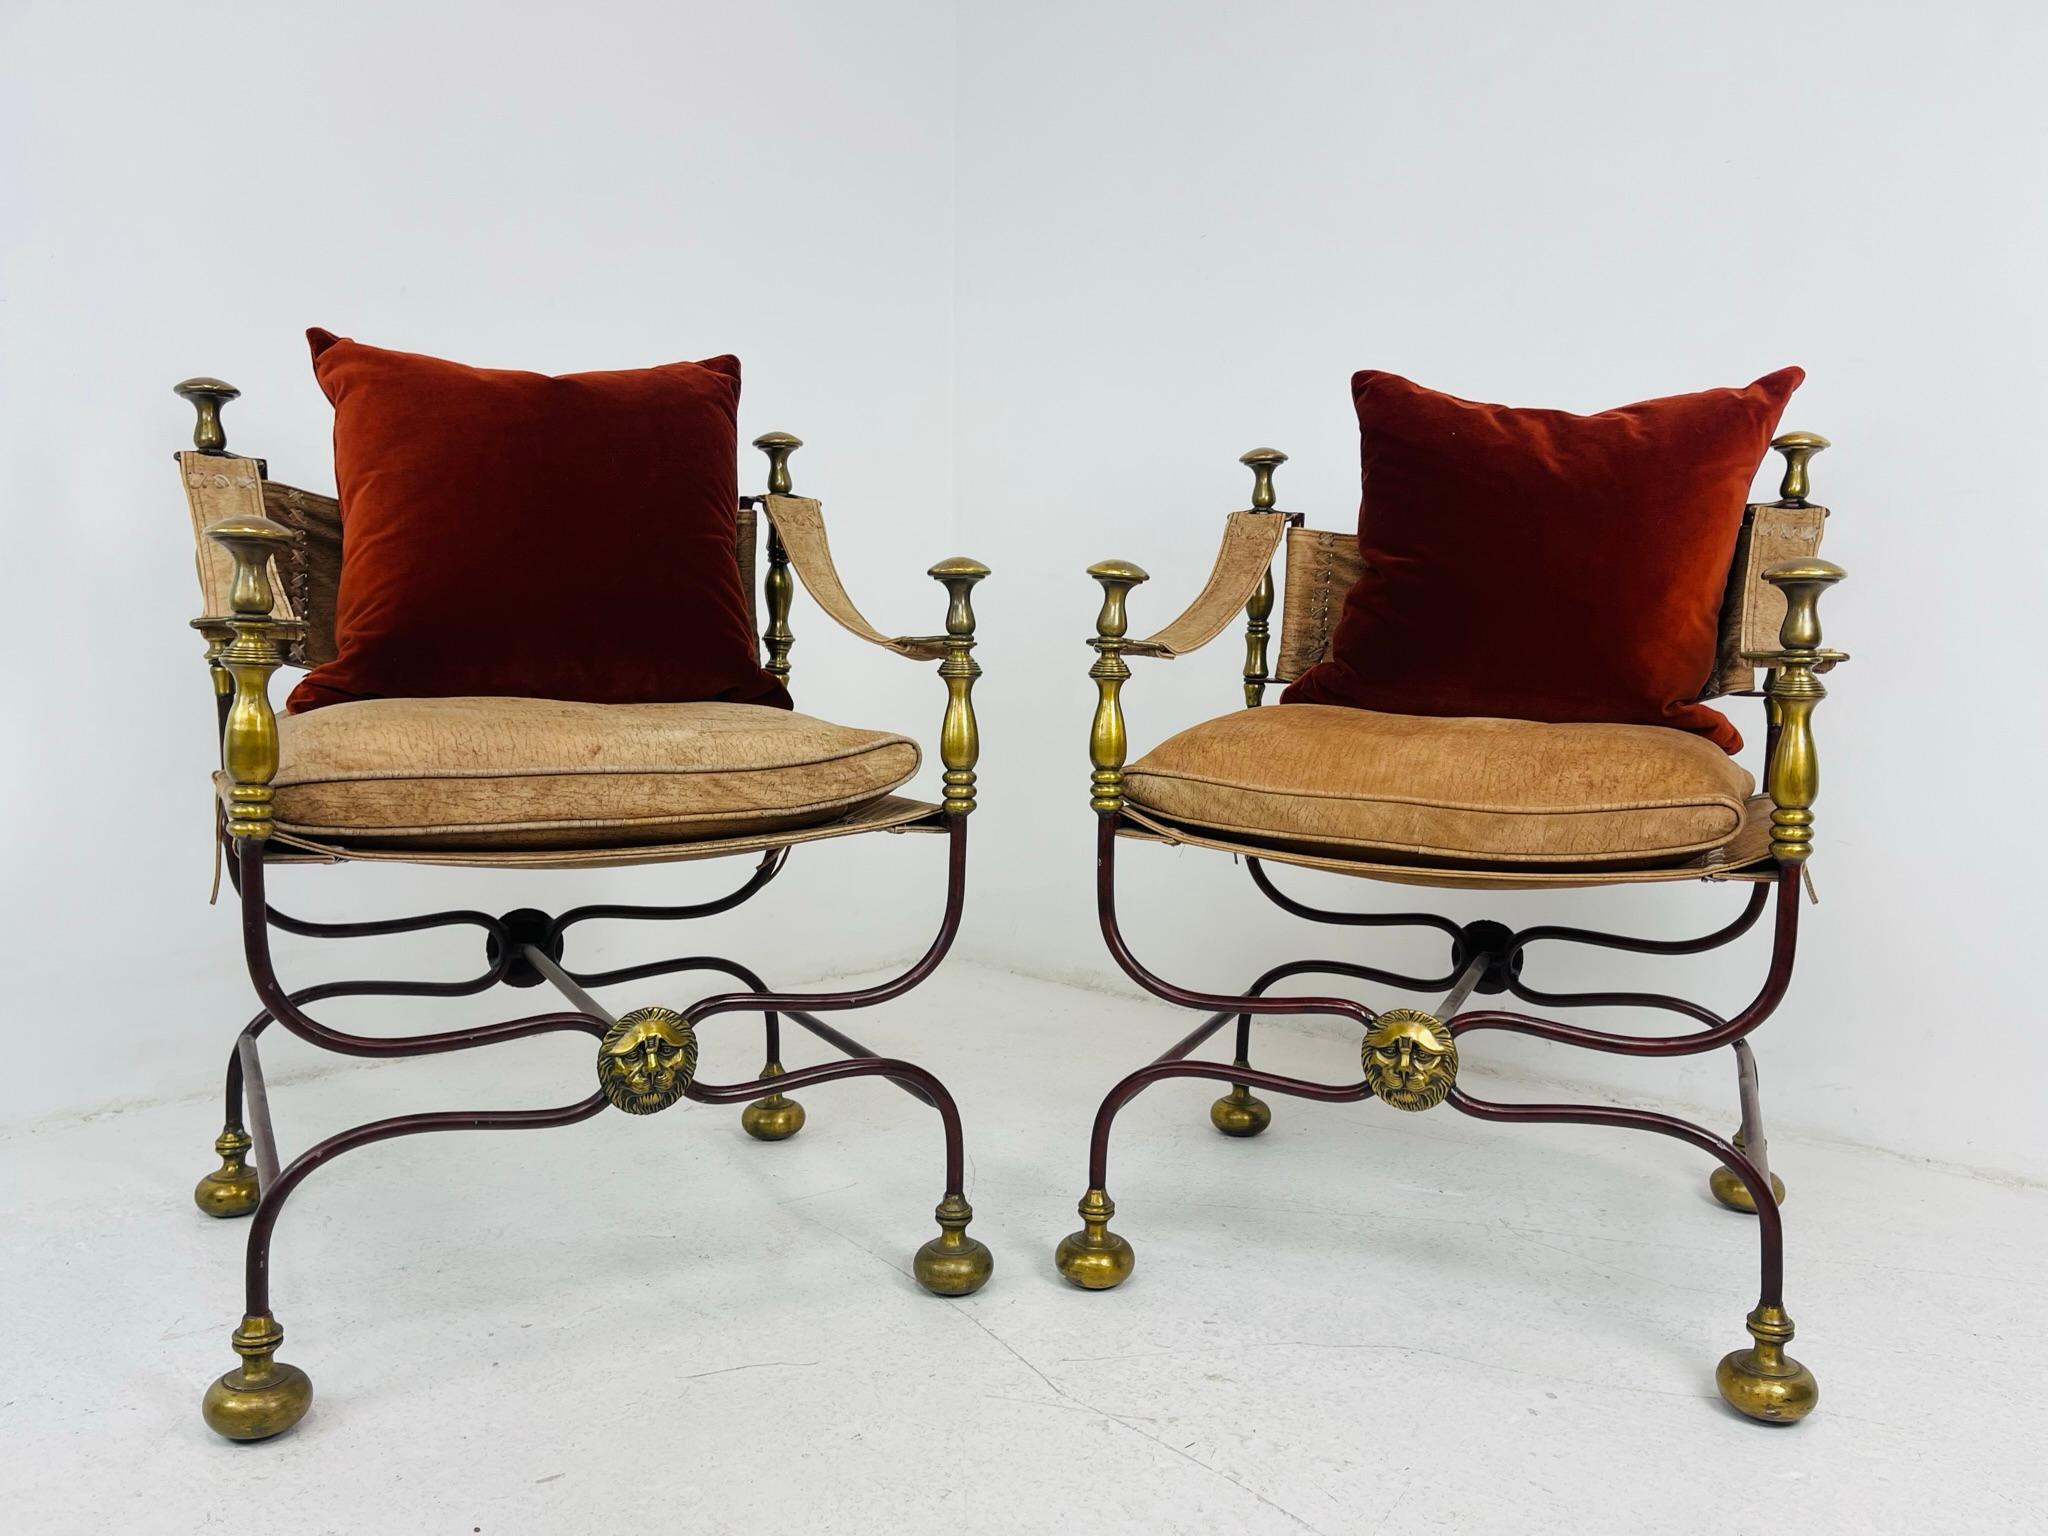 Ein Paar Wahlkampfstühle aus dem frühen 20. Jahrhundert mit Ledersitzen, -lehnen und -rücken. Die Stühle sind mit schmiedeeisernen Gestellen ausgestattet, die in Bronzedetails und Füße übergehen. Bronzene Löwenmedaillons zieren die Kreuzung an der